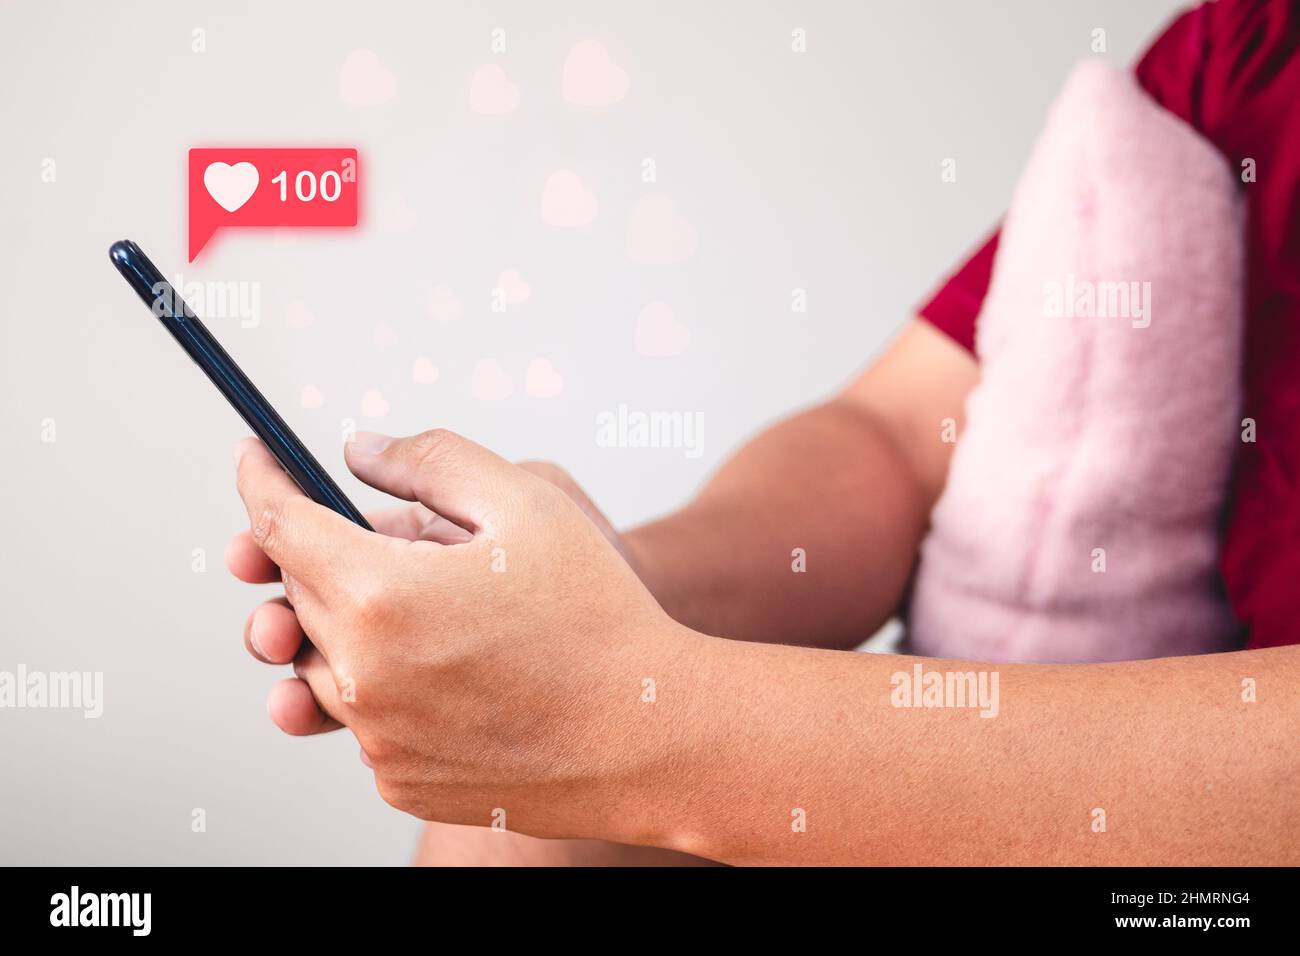 Concetto di San Valentino. L'uomo usa il segno della mano per dare e ricevere l'amore attraverso uno smartphone. Effetto visivo della forma del cuore. Vista laterale. Foto Stock